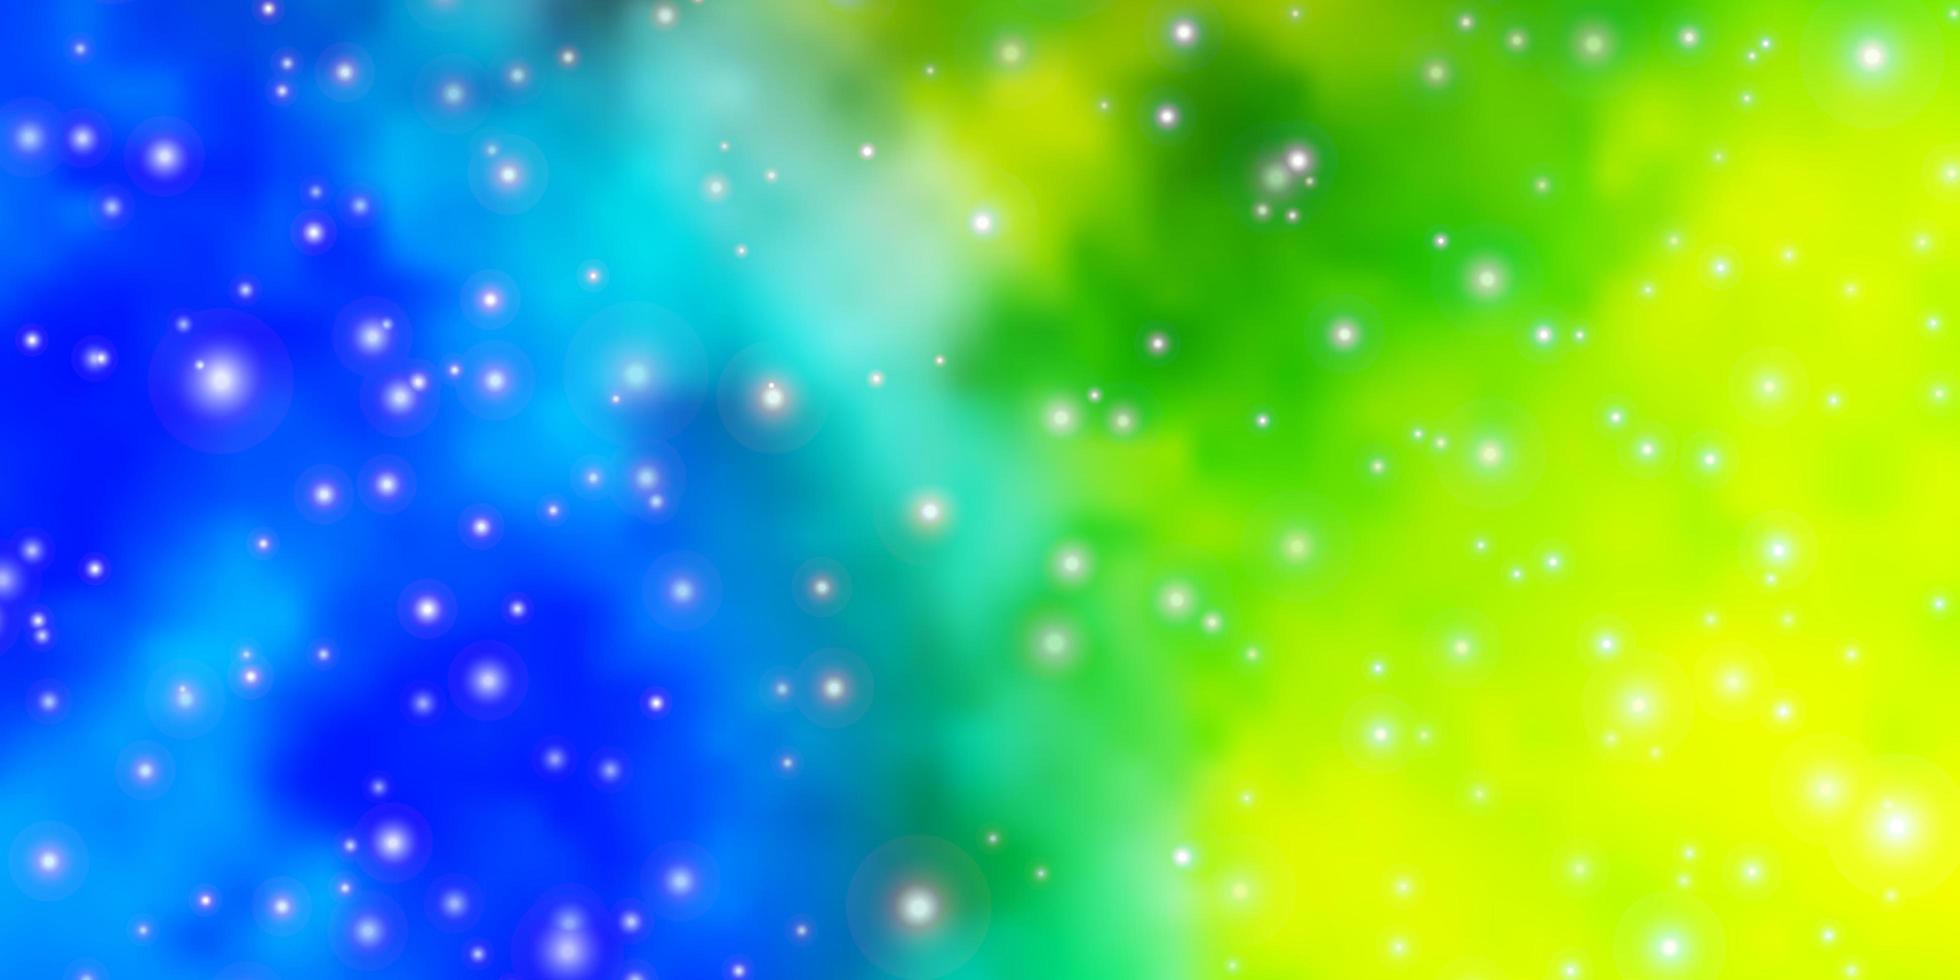 ljusblå grön vektormall med neonstjärnor suddar dekorativ design i enkel stil med stjärnmönster för inslagning av presenter vektor